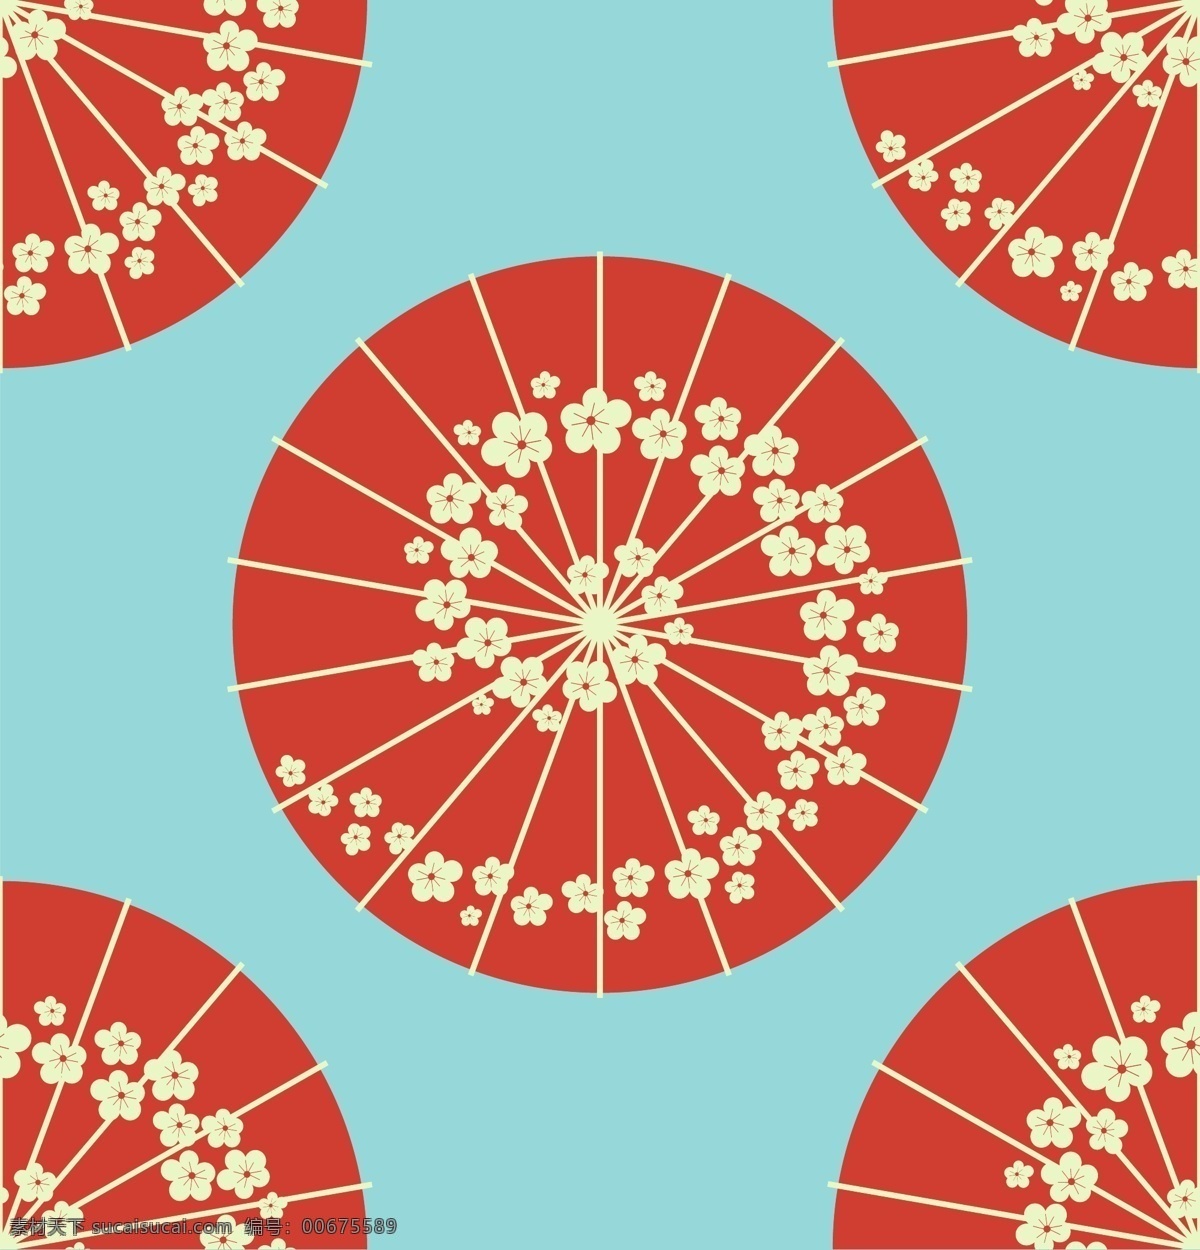 日本花伞 日本传统图案 和服印花纹样 日式纹理背景 线条纹样 日式花纹